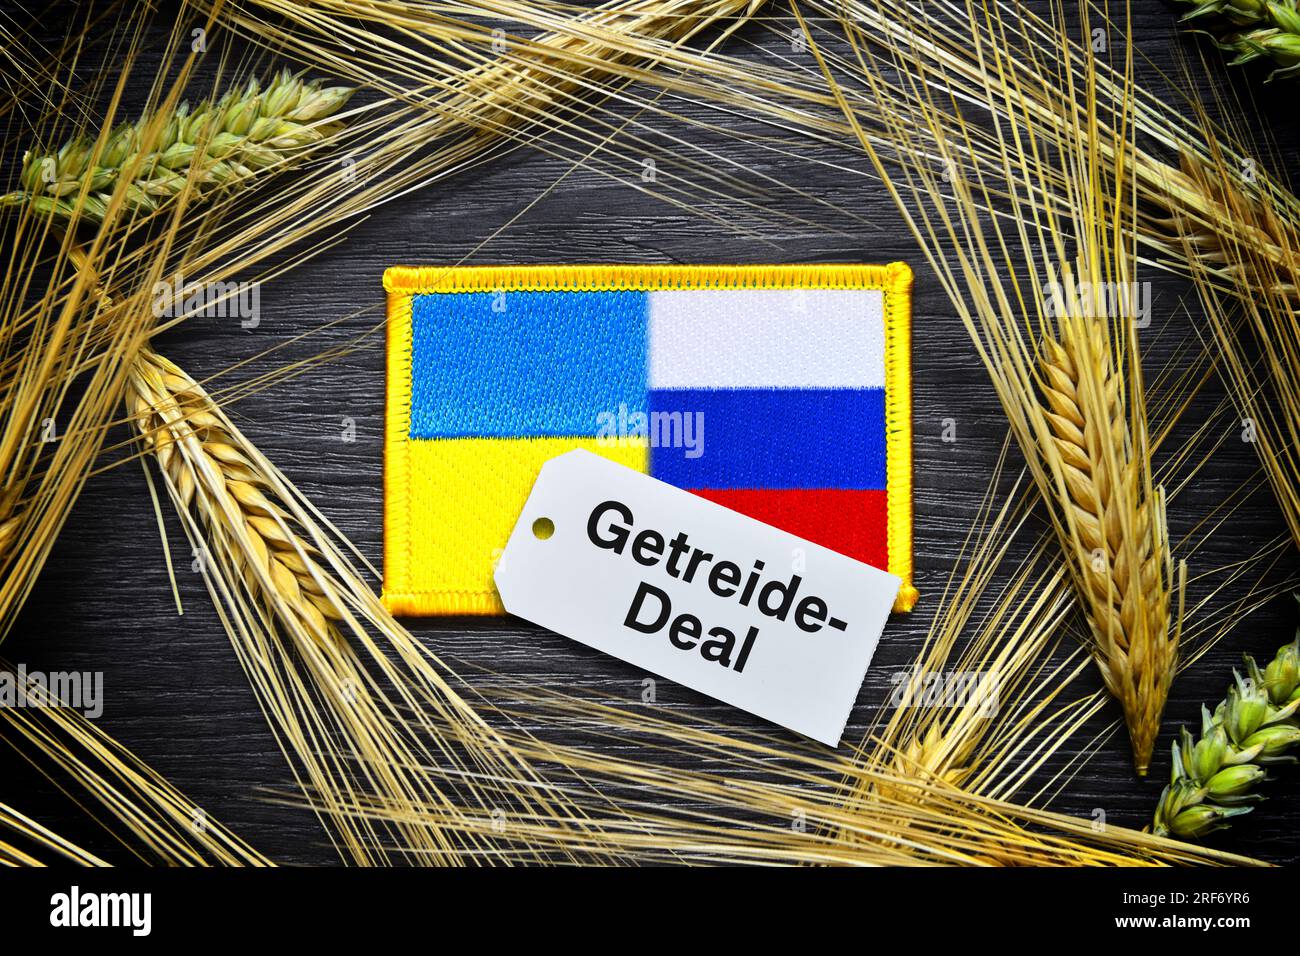 FOTOMONTAGE, Die Fahnen von Ukraine und Russland umgeben von Kornähren und Etikett mit Aufschrift Getreide-Deal Foto Stock